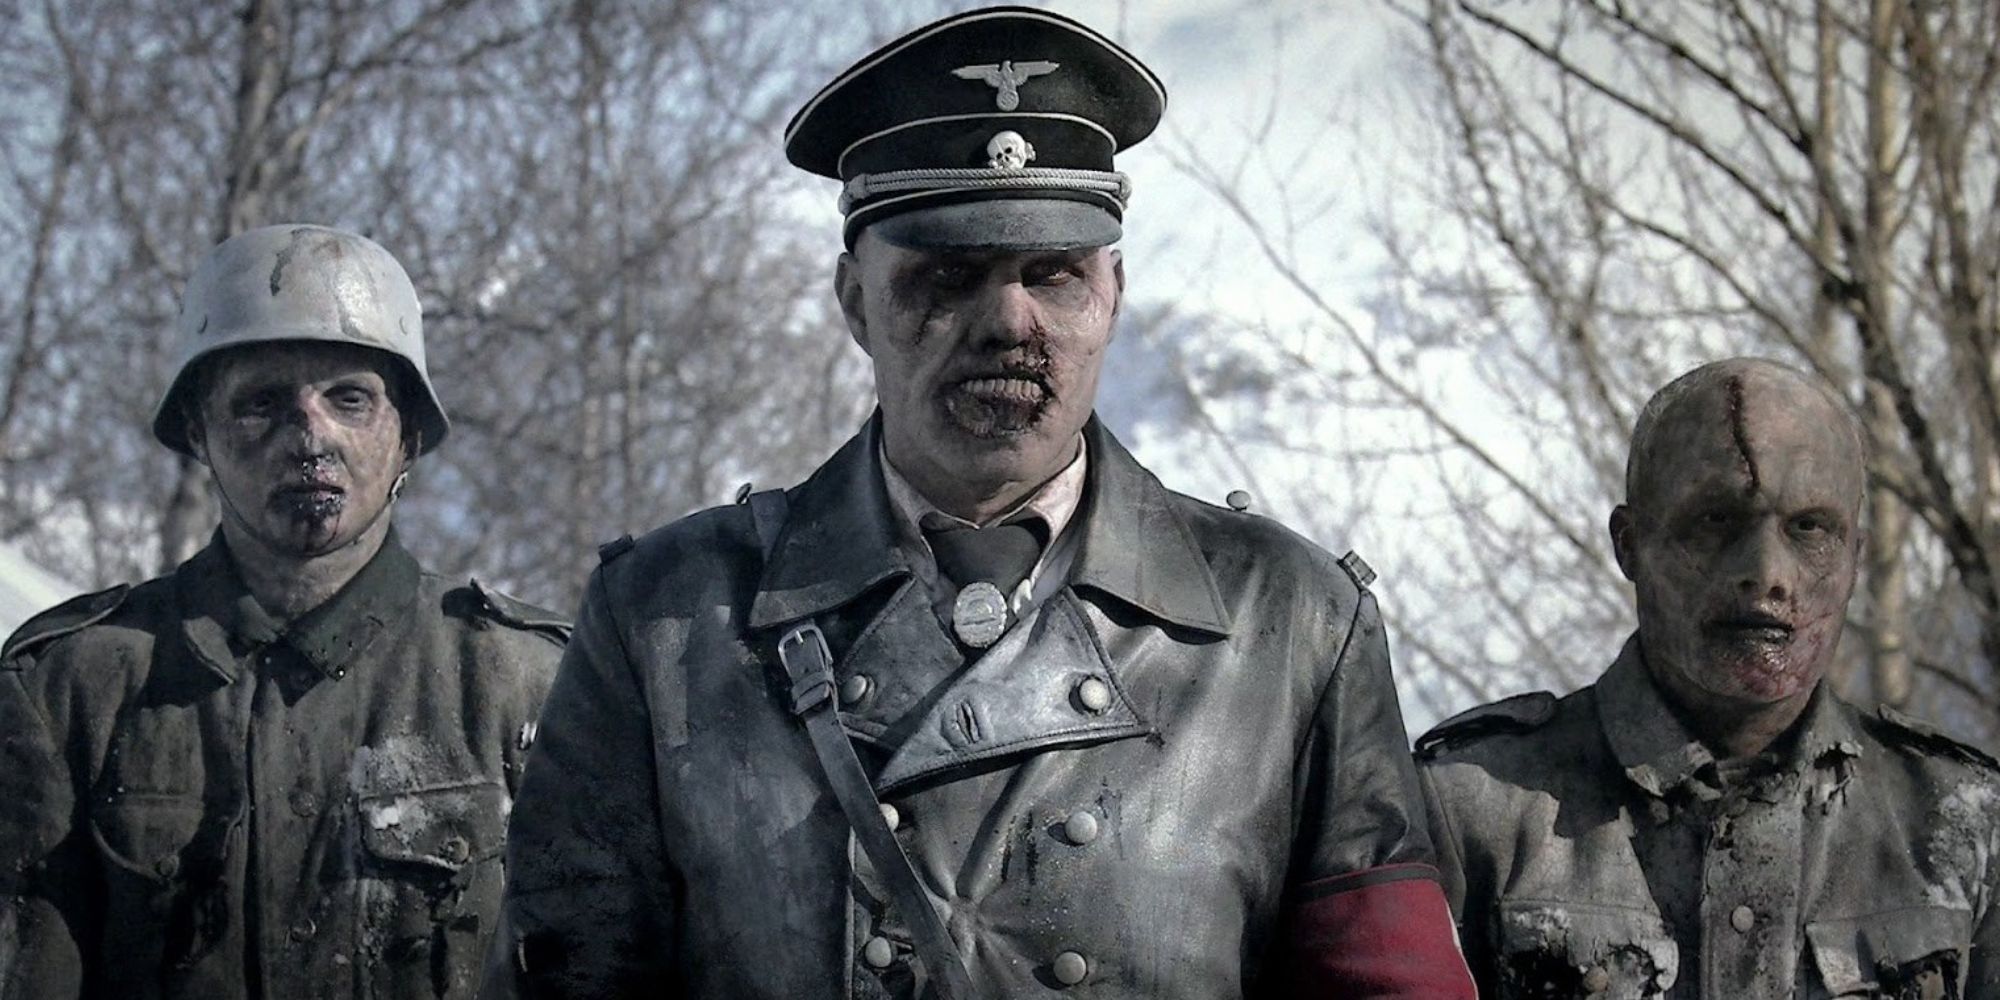 Zombie Nazis standing menacingly in 'Dead Snow'